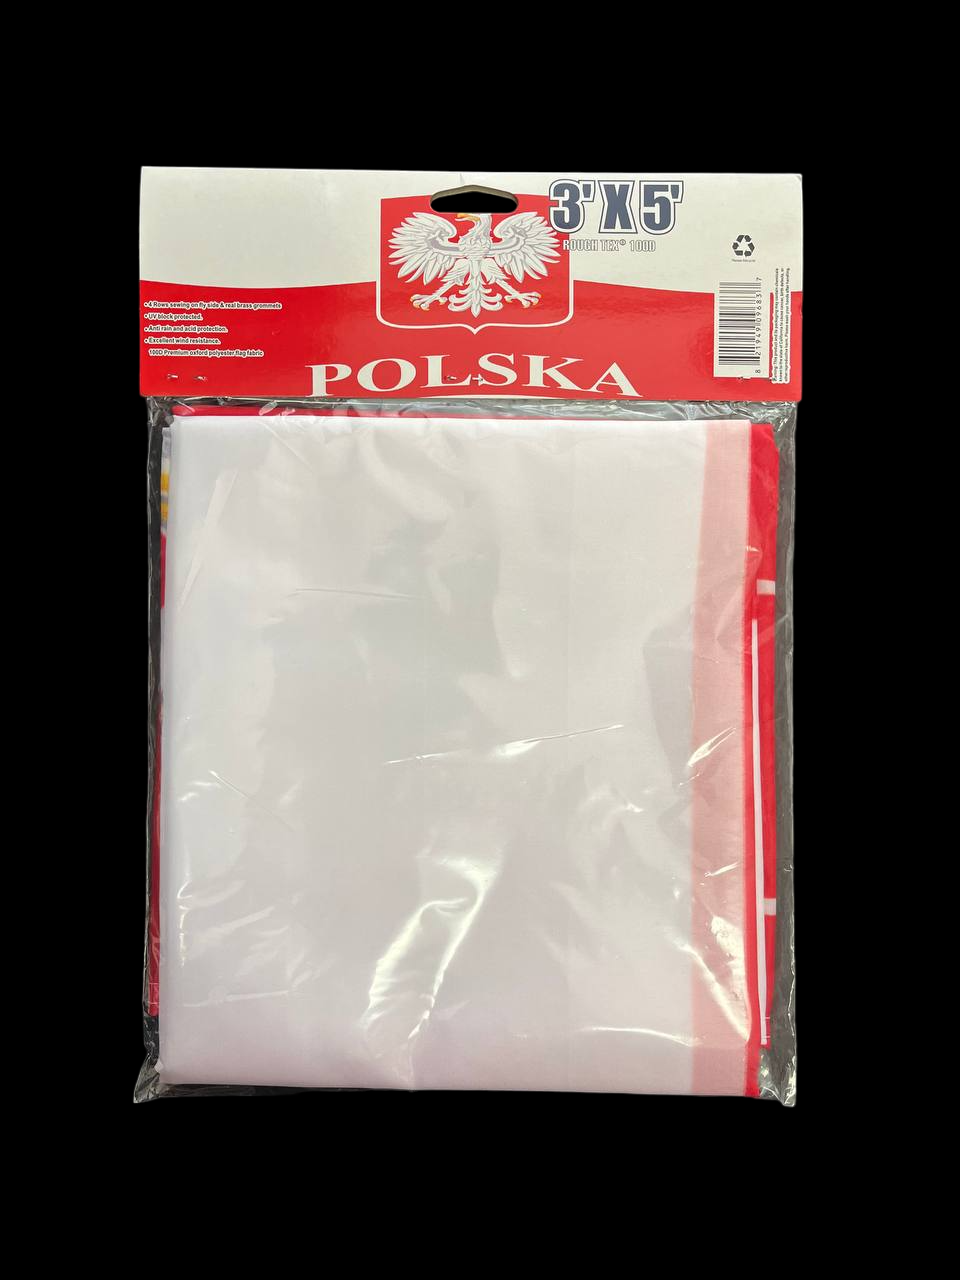 Poland 3"x5" Flag 100D With Polska Word